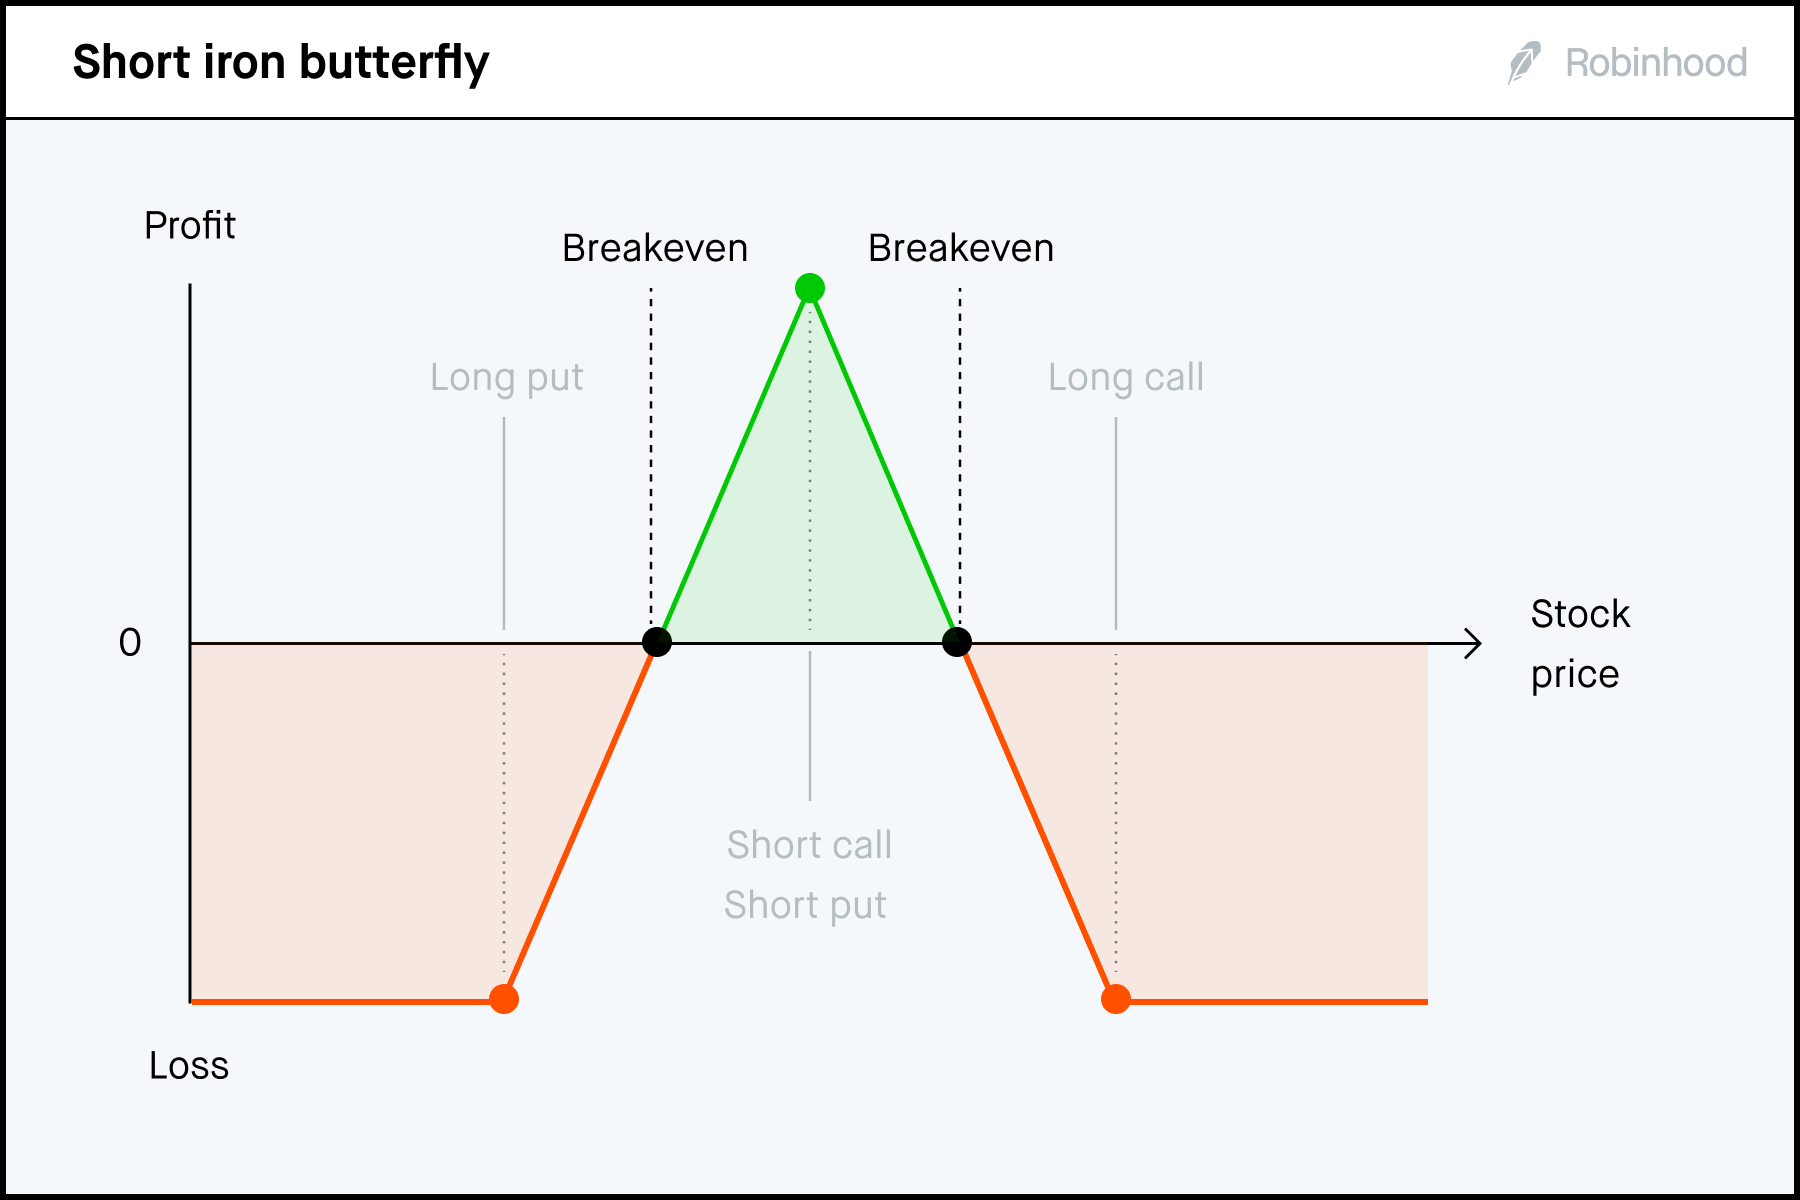 Short iron butterfly P/L chart 3x